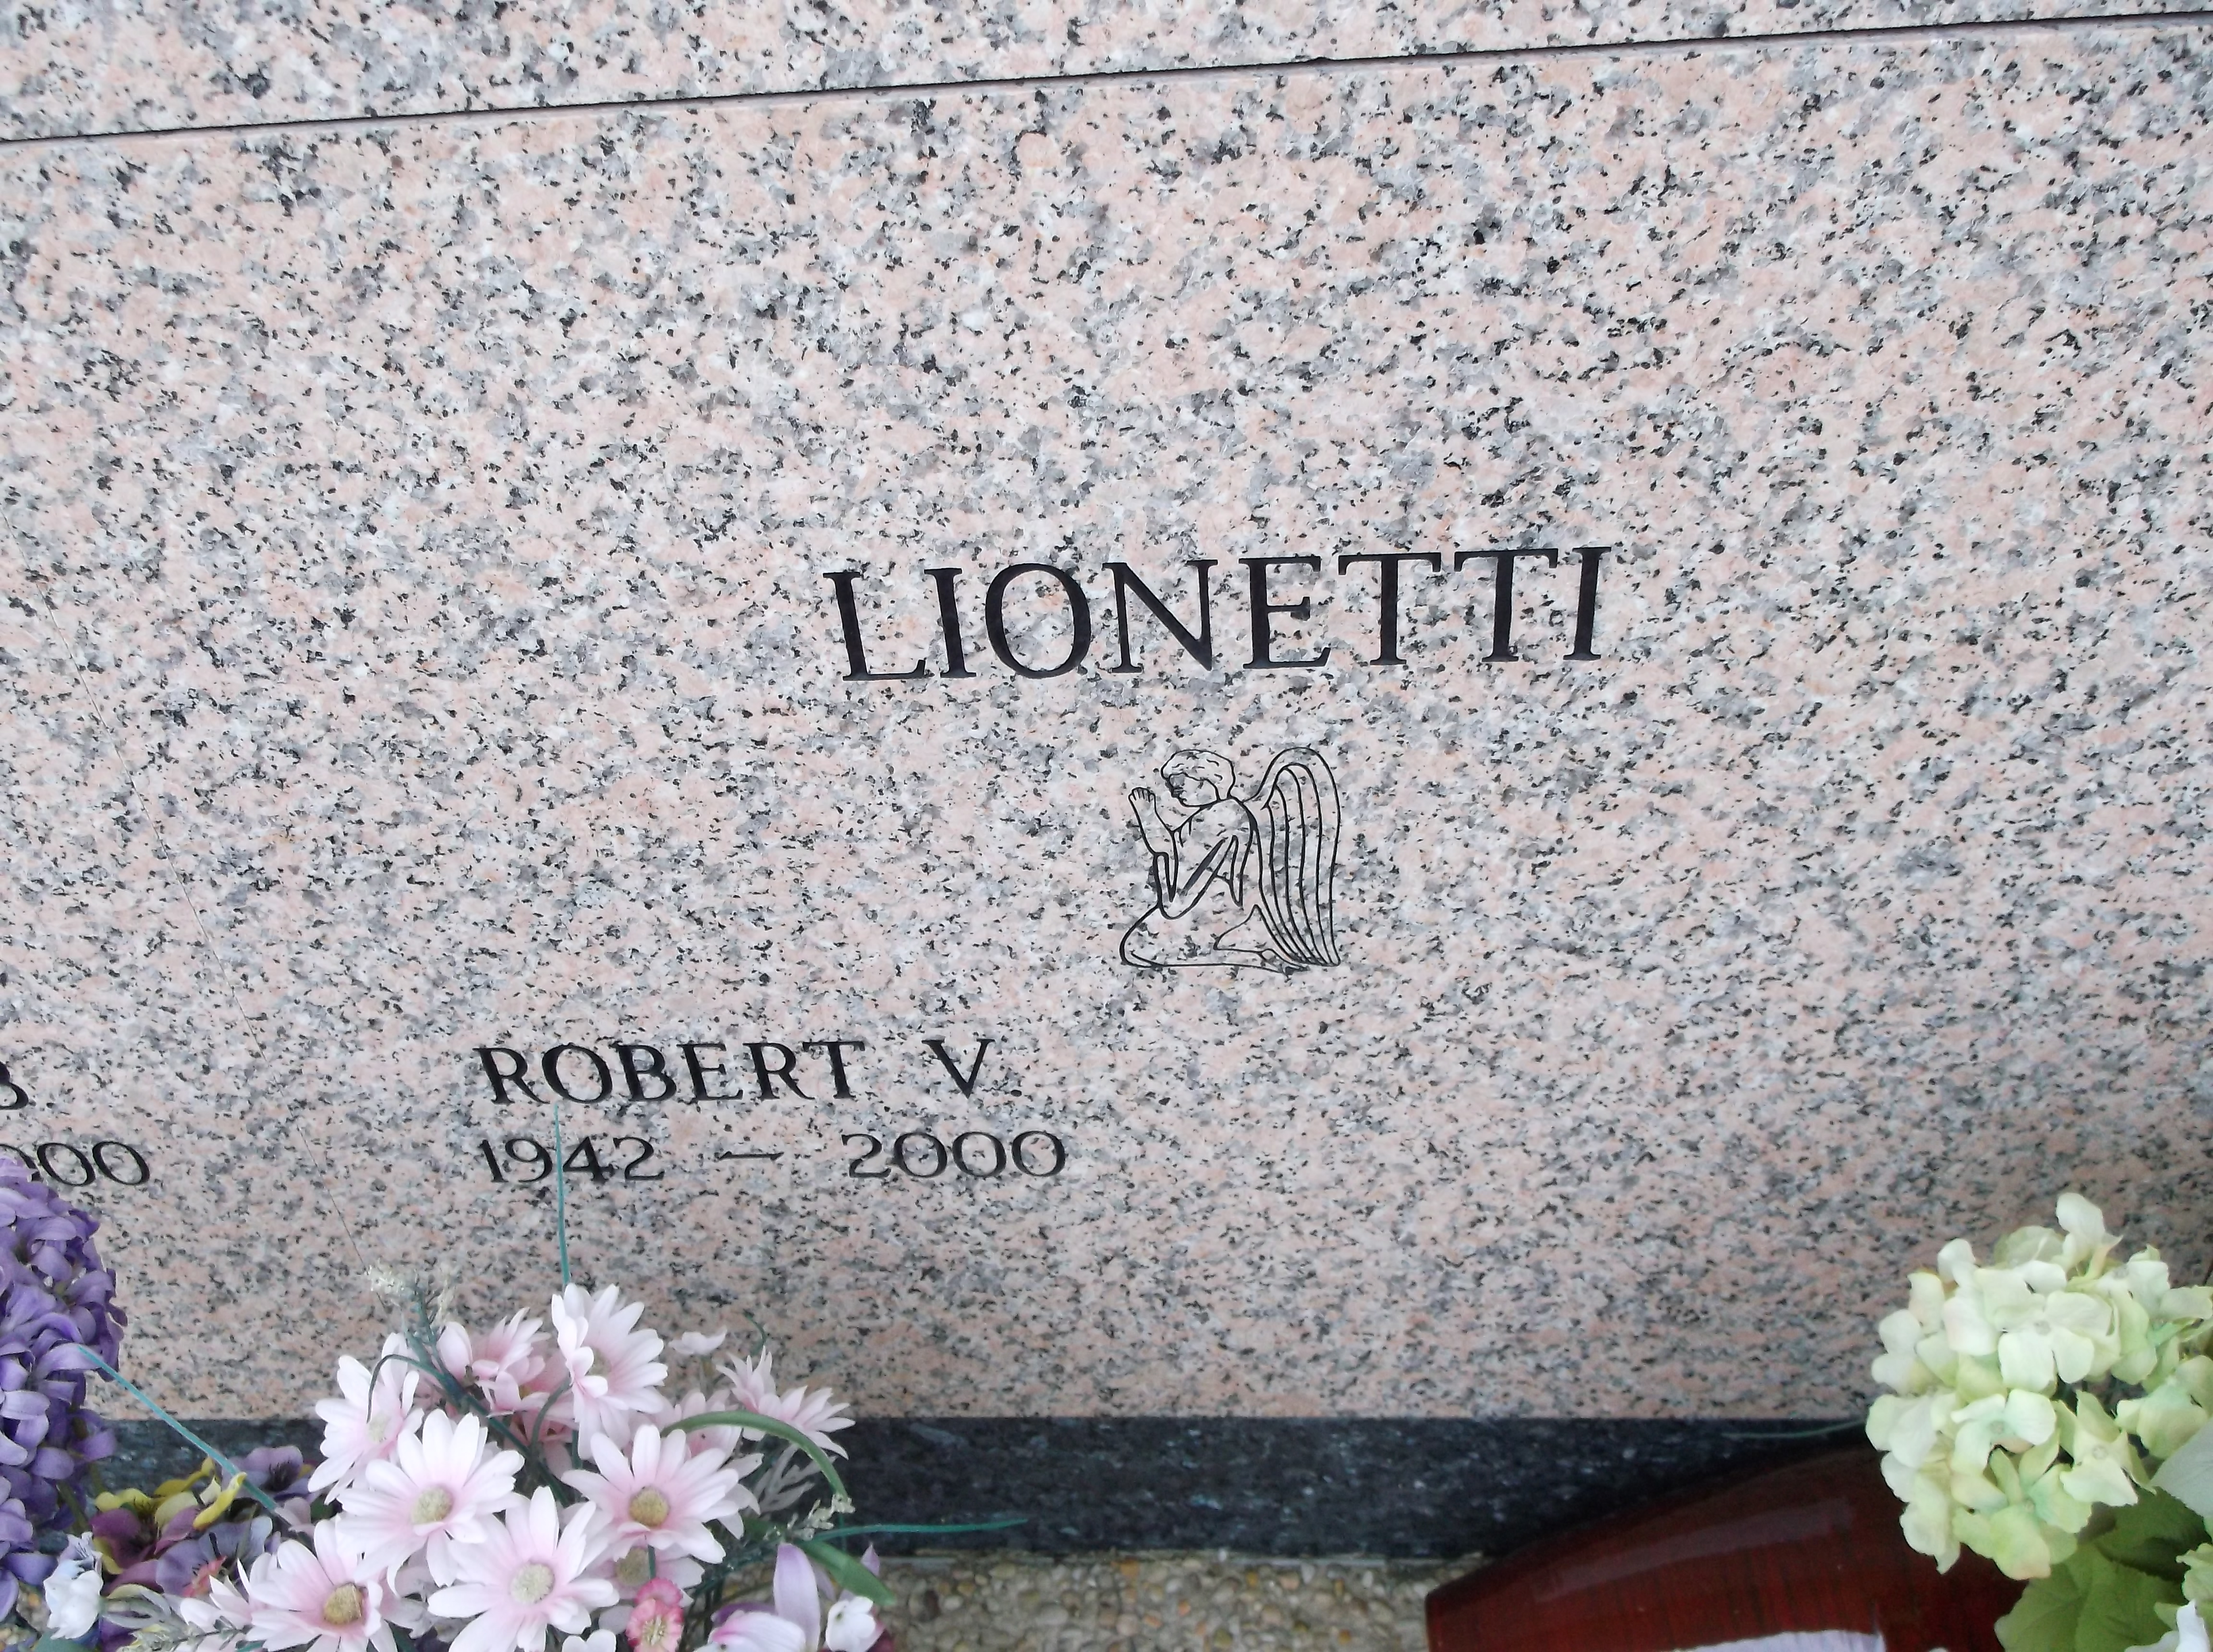 Robert V Lionetti